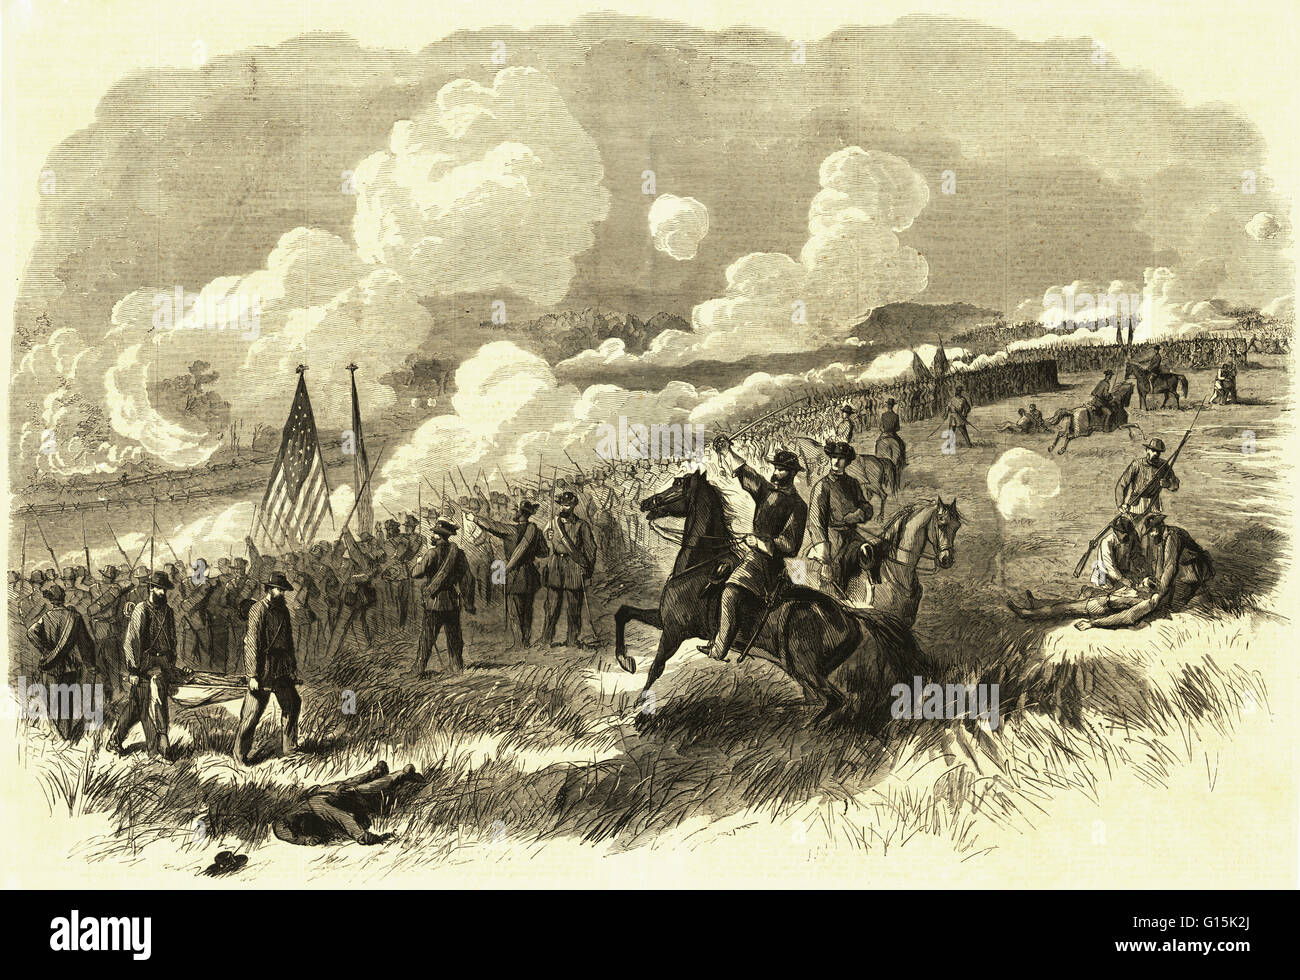 Gravur mit dem Titel: "Oberst Burnside Brigade am Bull Run, erste und zweite Rhode Island und siebzig - ersten New York Regimente, mit ihrer Artillerie, Angriff auf die Rebellen-Batterien bei Bull Run von A. Waud." Dies war die erste große Konflikt des amerikanischen C Stockfoto